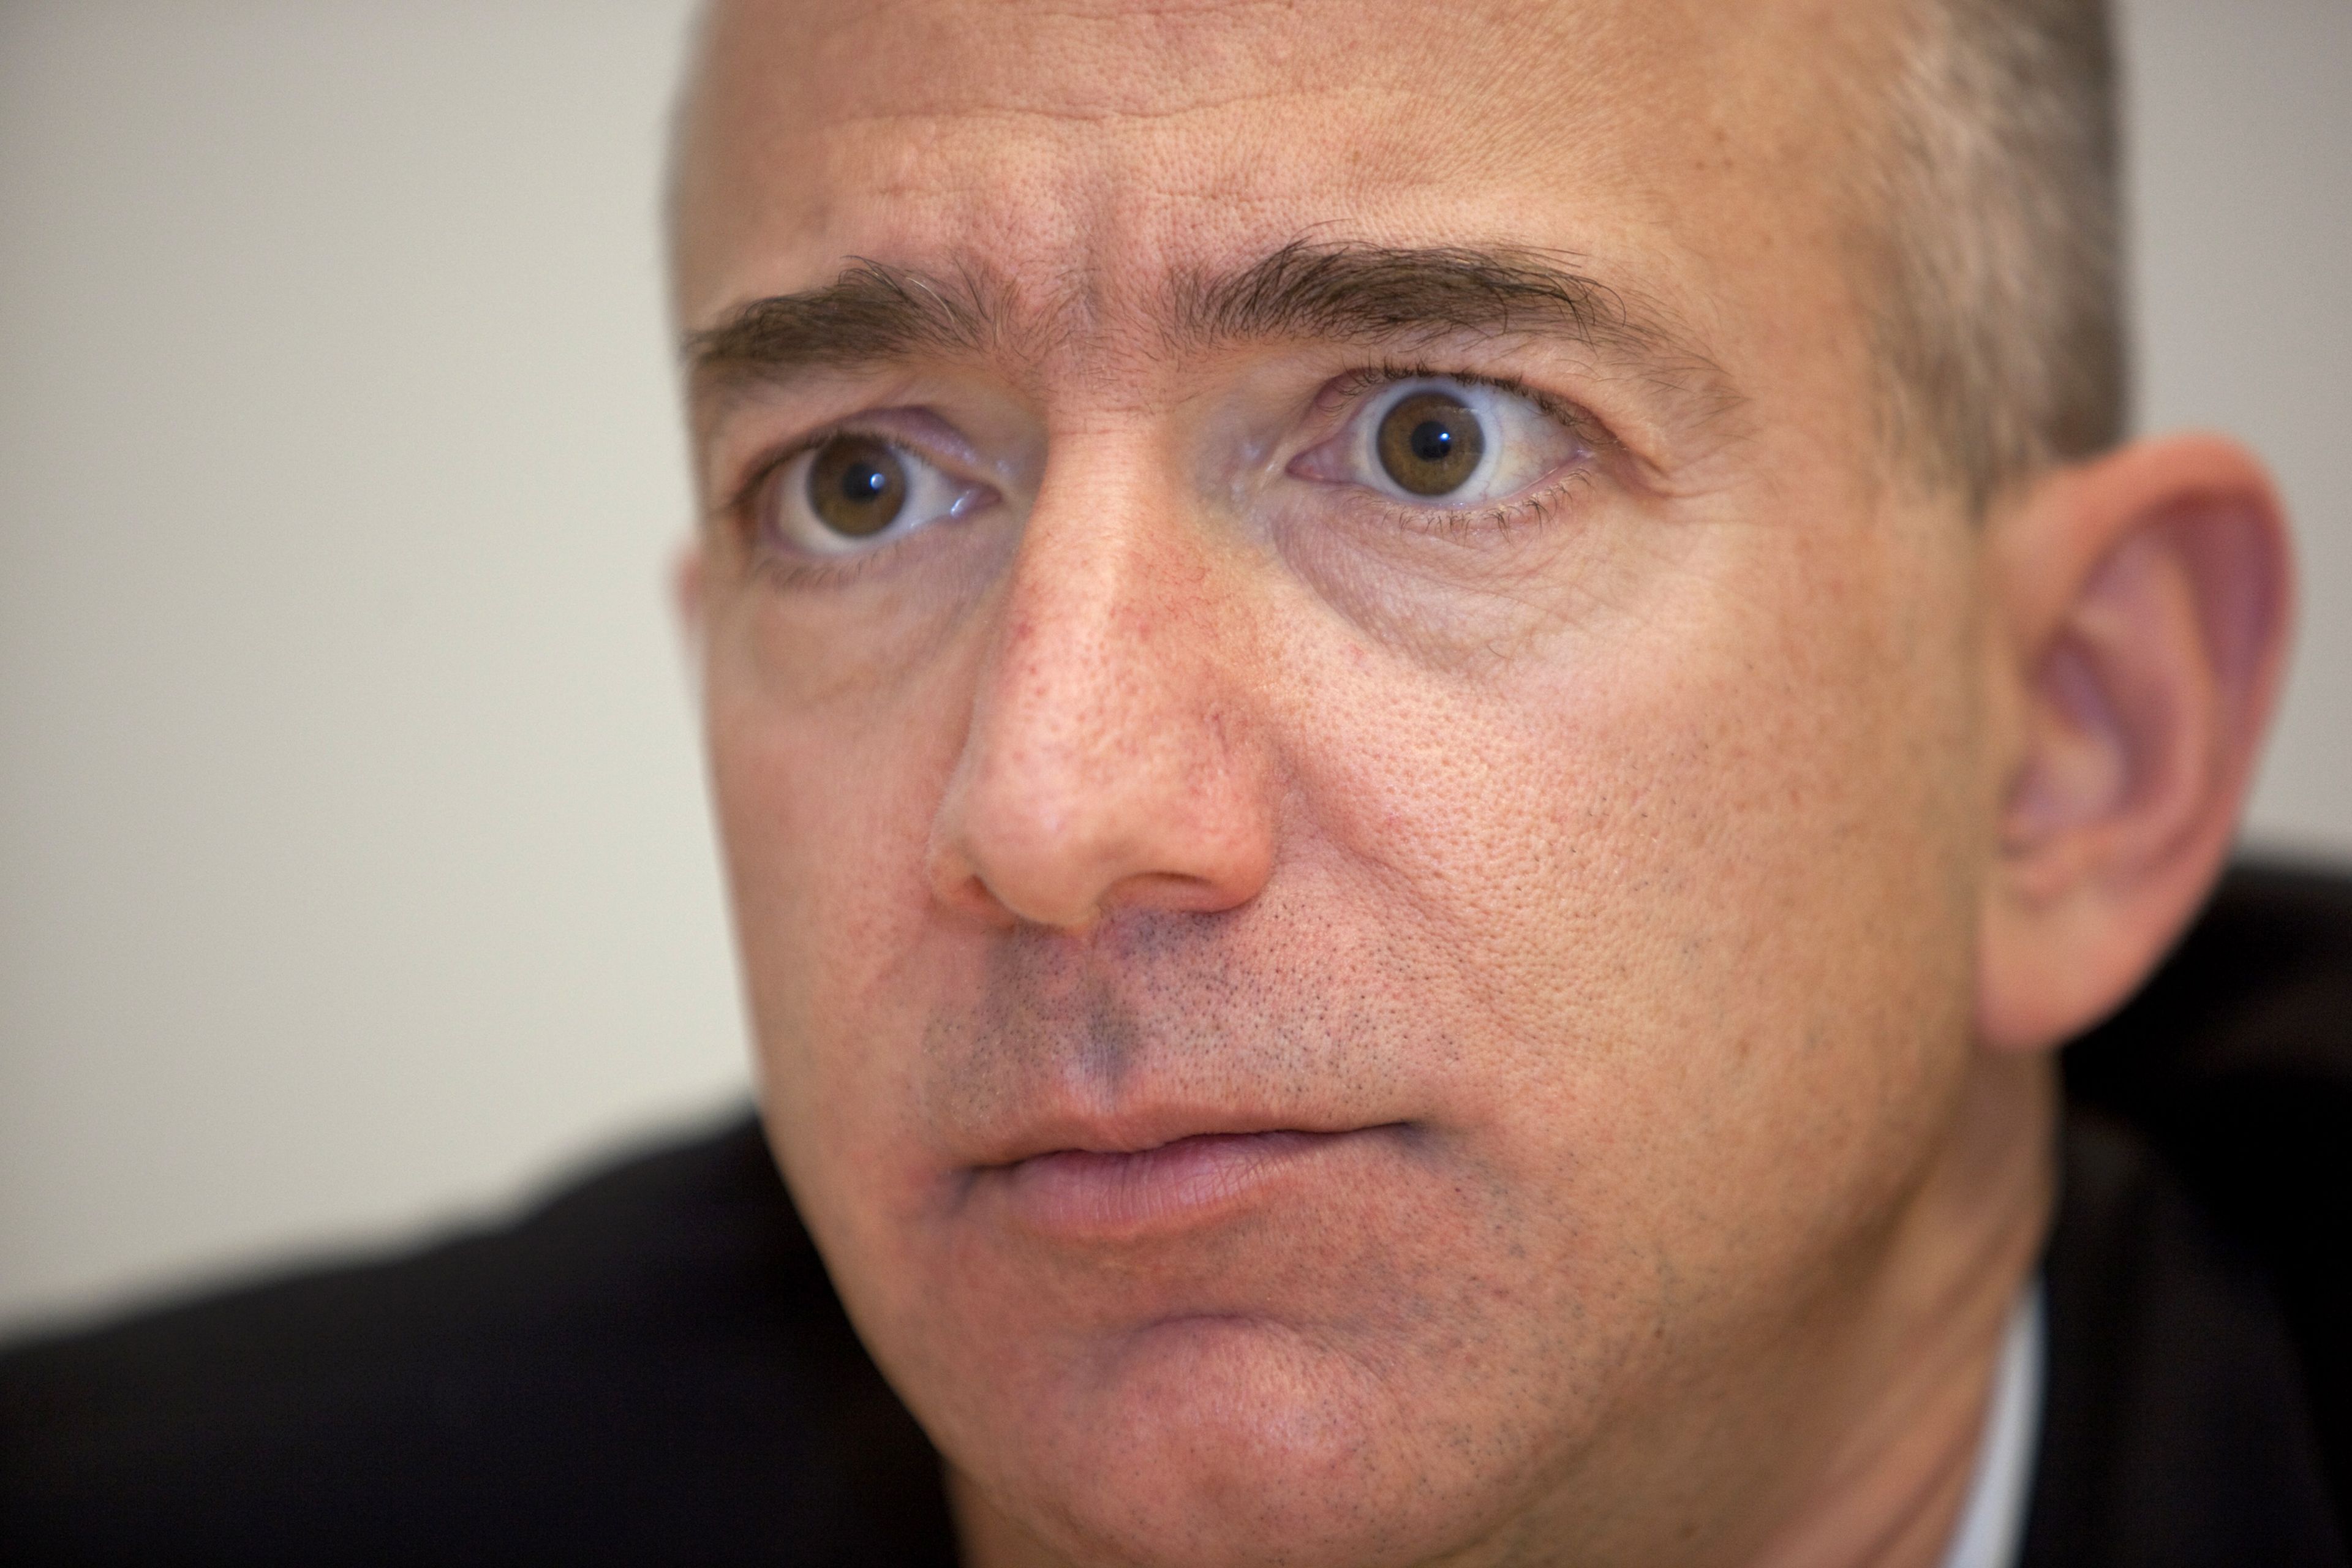 El fundador y CEO de Amazon, Jeff Bezos.